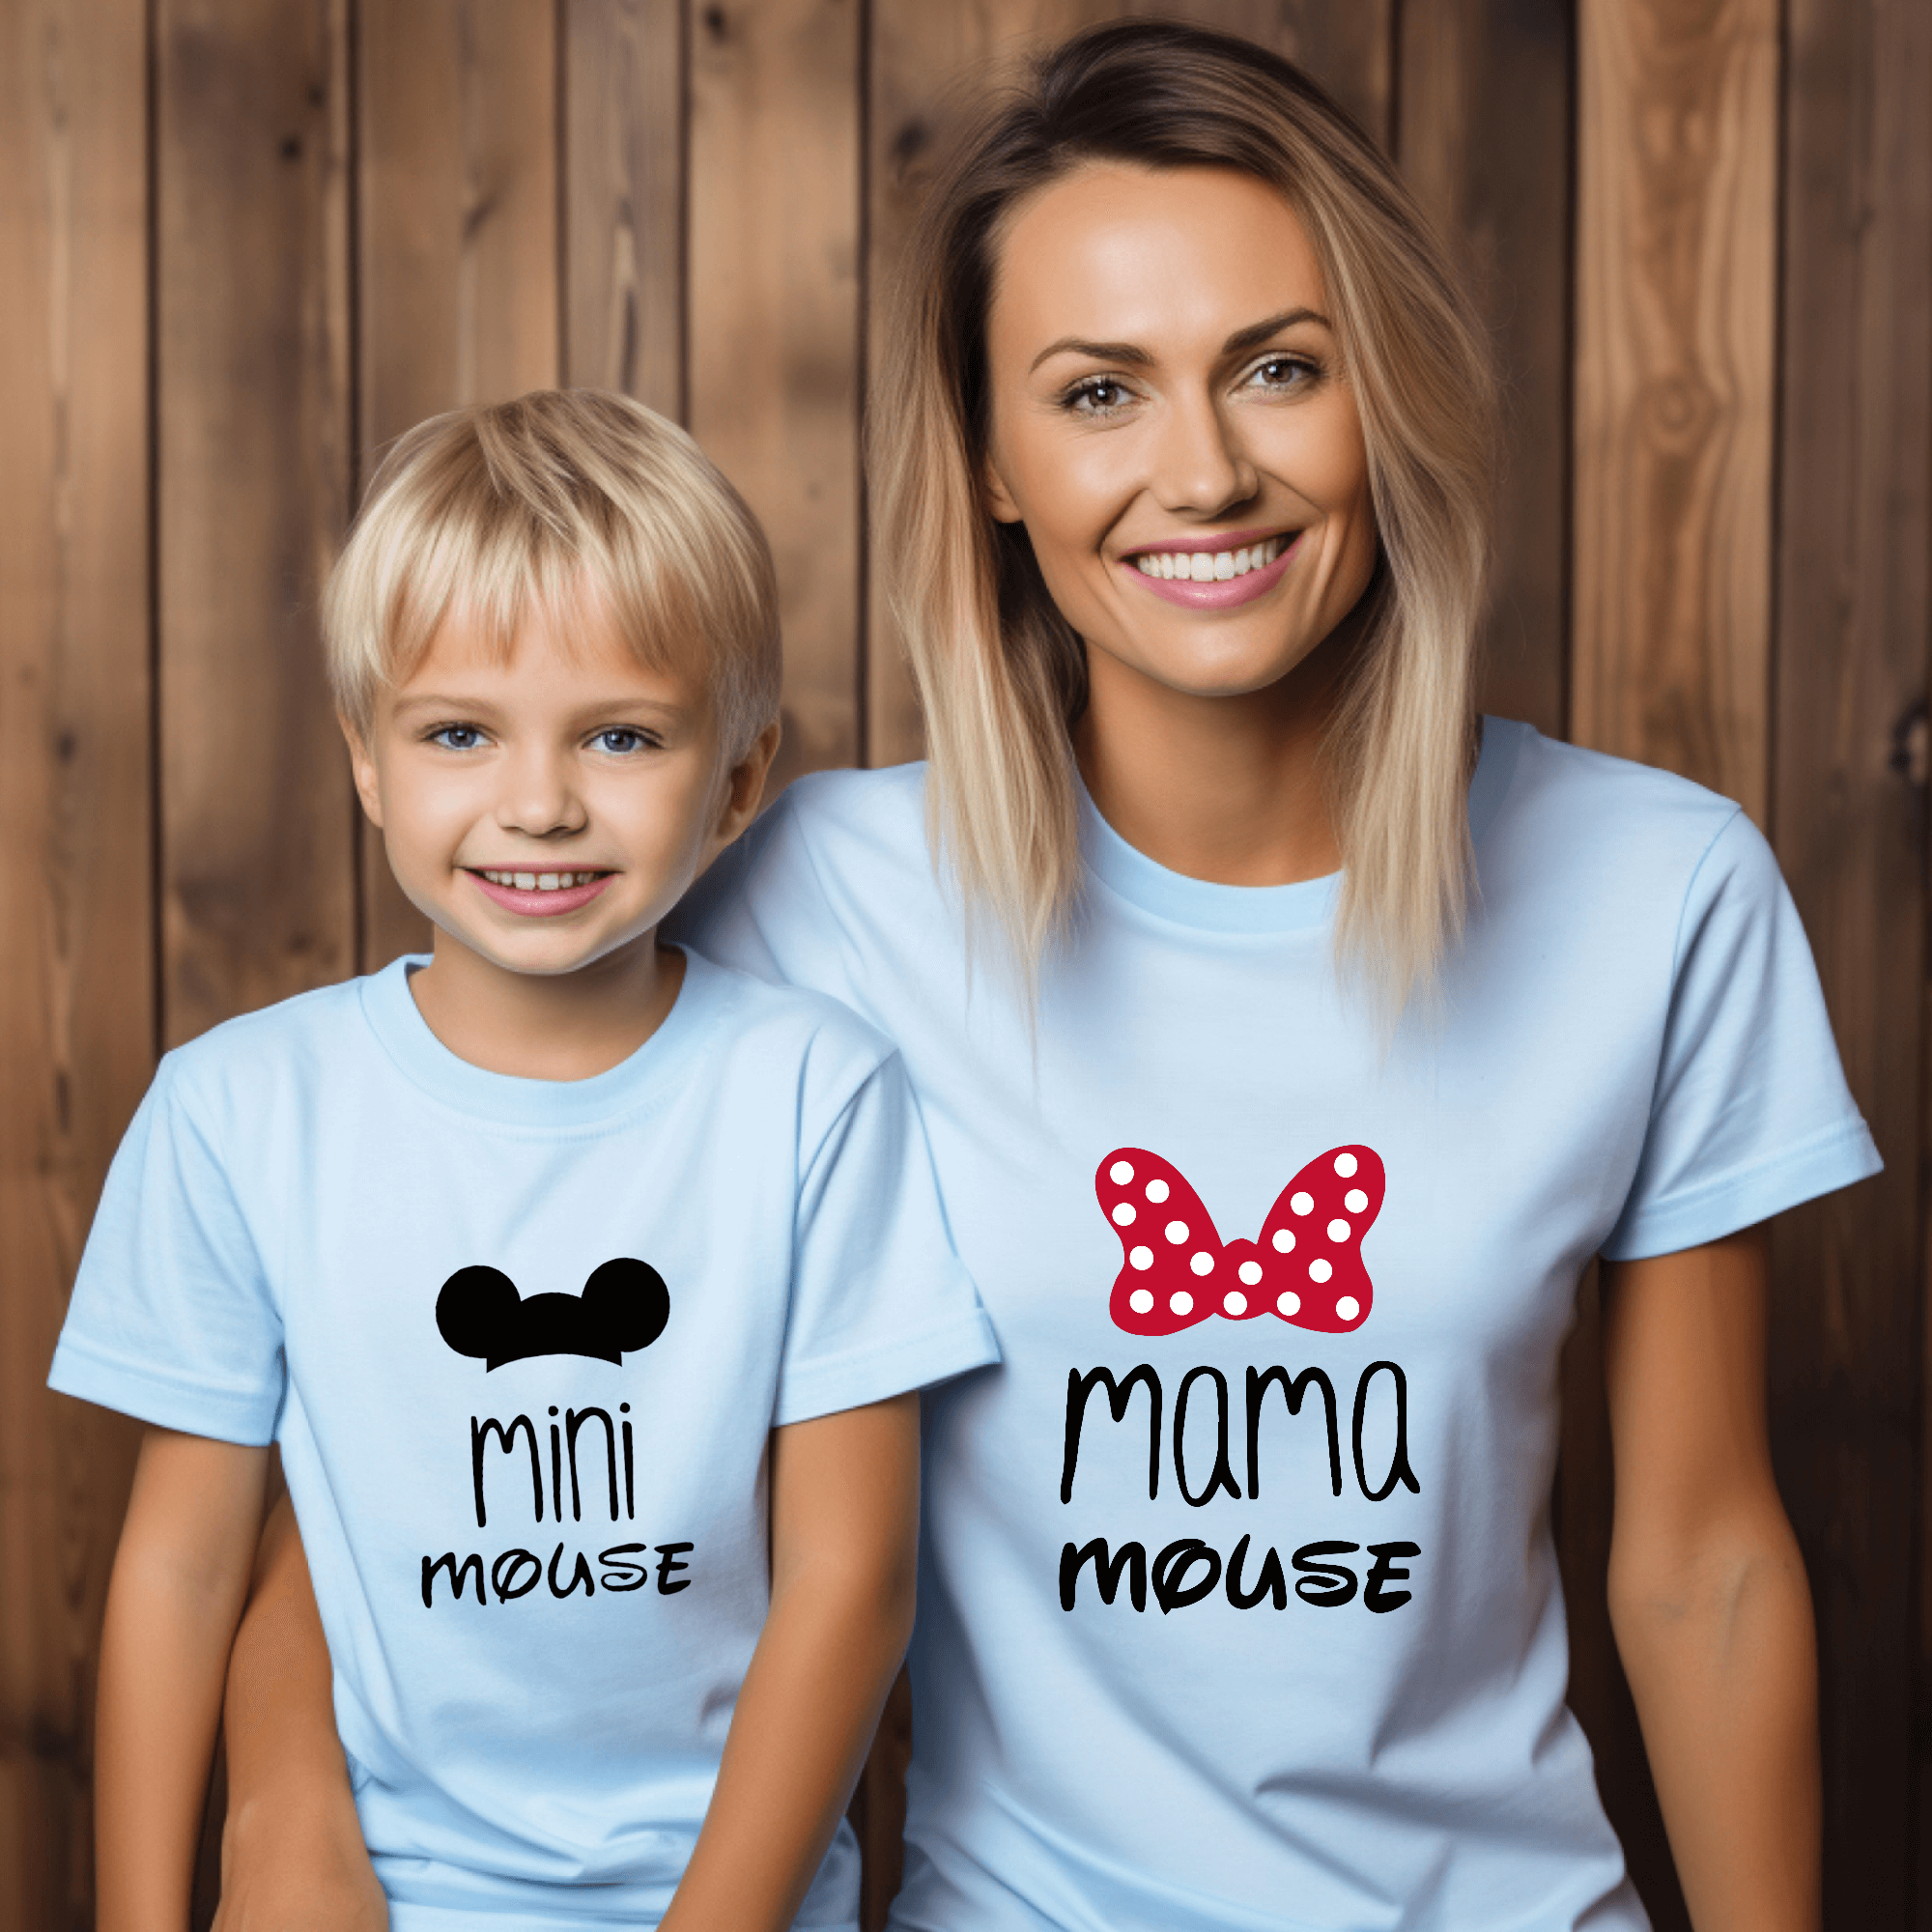 Camiseta Mama mouse mini mouse